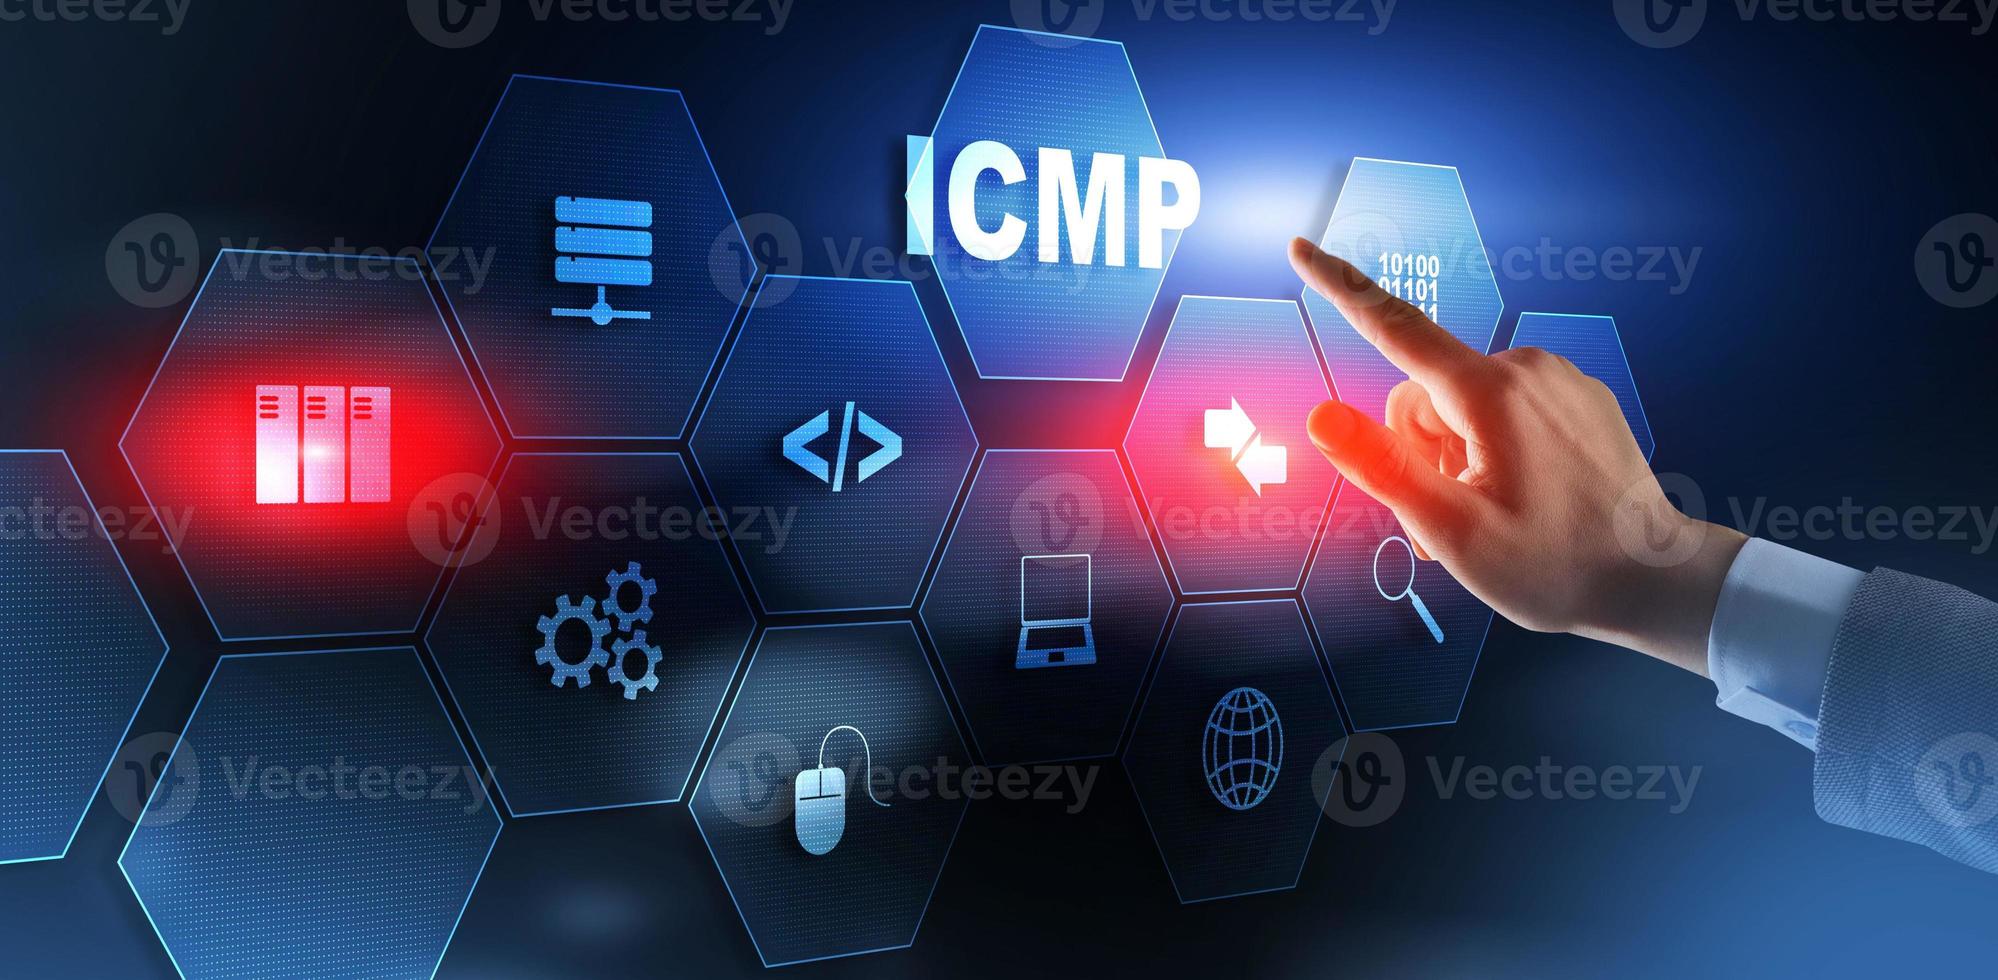 o protocolo de mensagens de controle da internet icmp 2021 foto